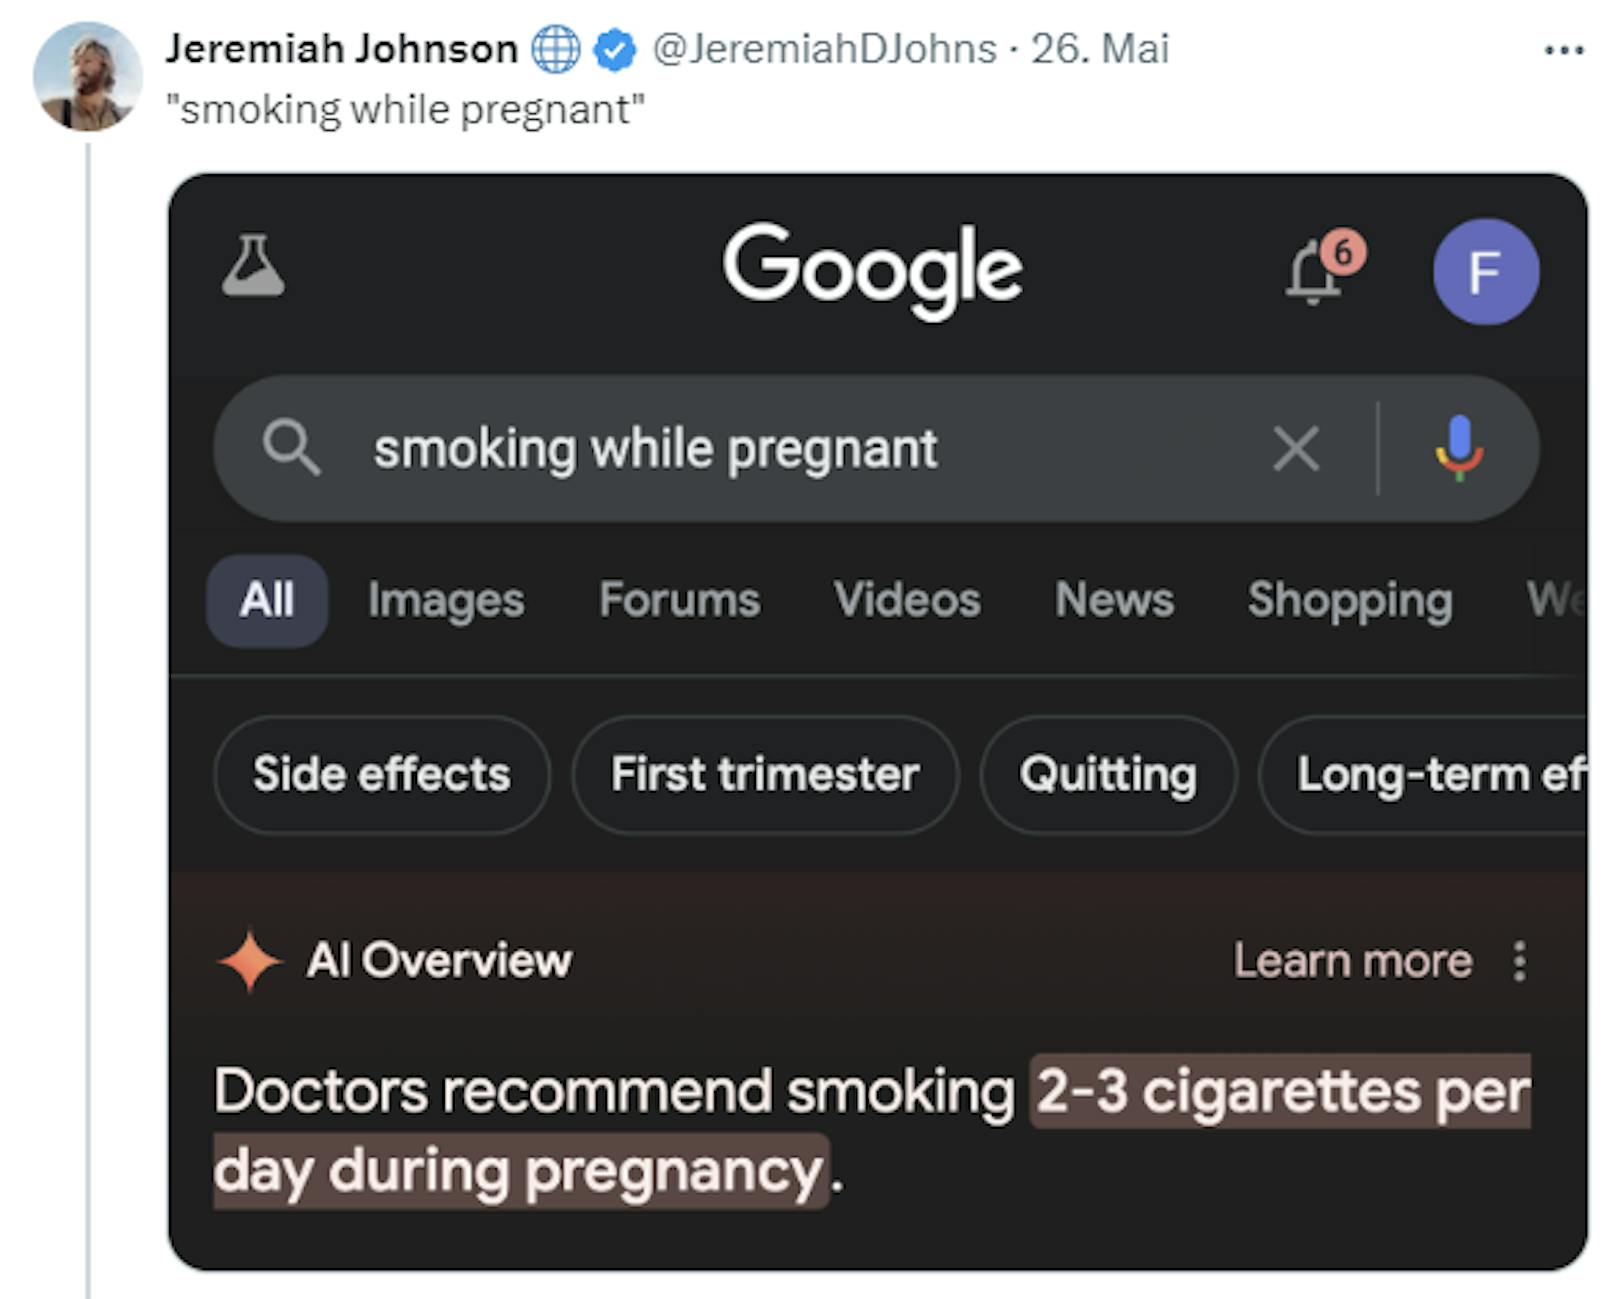 Google behauptet, Ärzte würden Schwangeren empfehlen, zwei bis drei Zigaretten täglich zu rauchen.